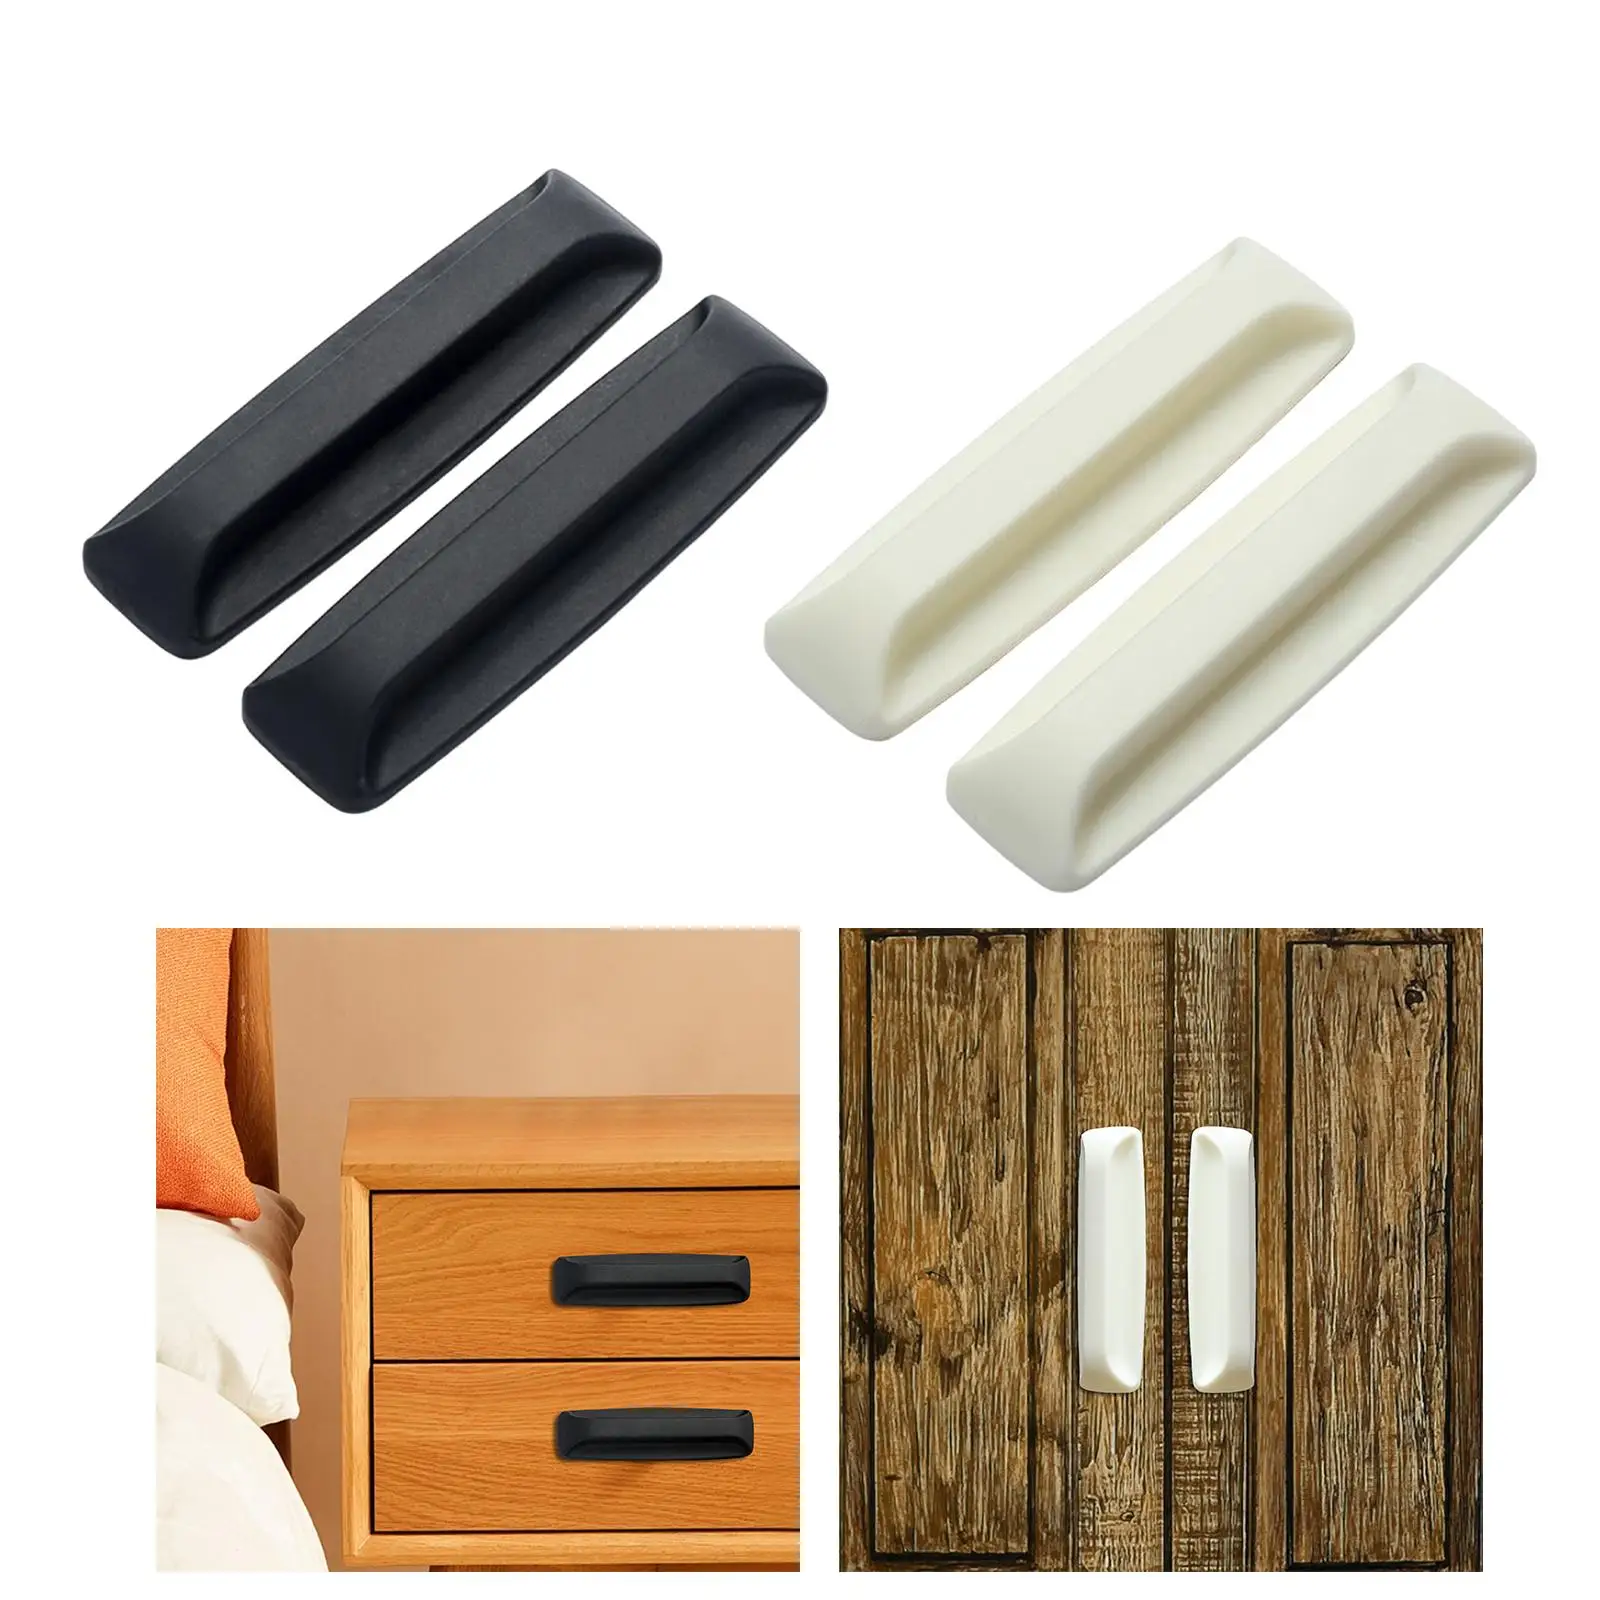 2 Pieces Drawer Pull Helper Holding Hands with Glue Universal Door Handle for Window Cabinet Bathrooms Wardrobe Sliding Door